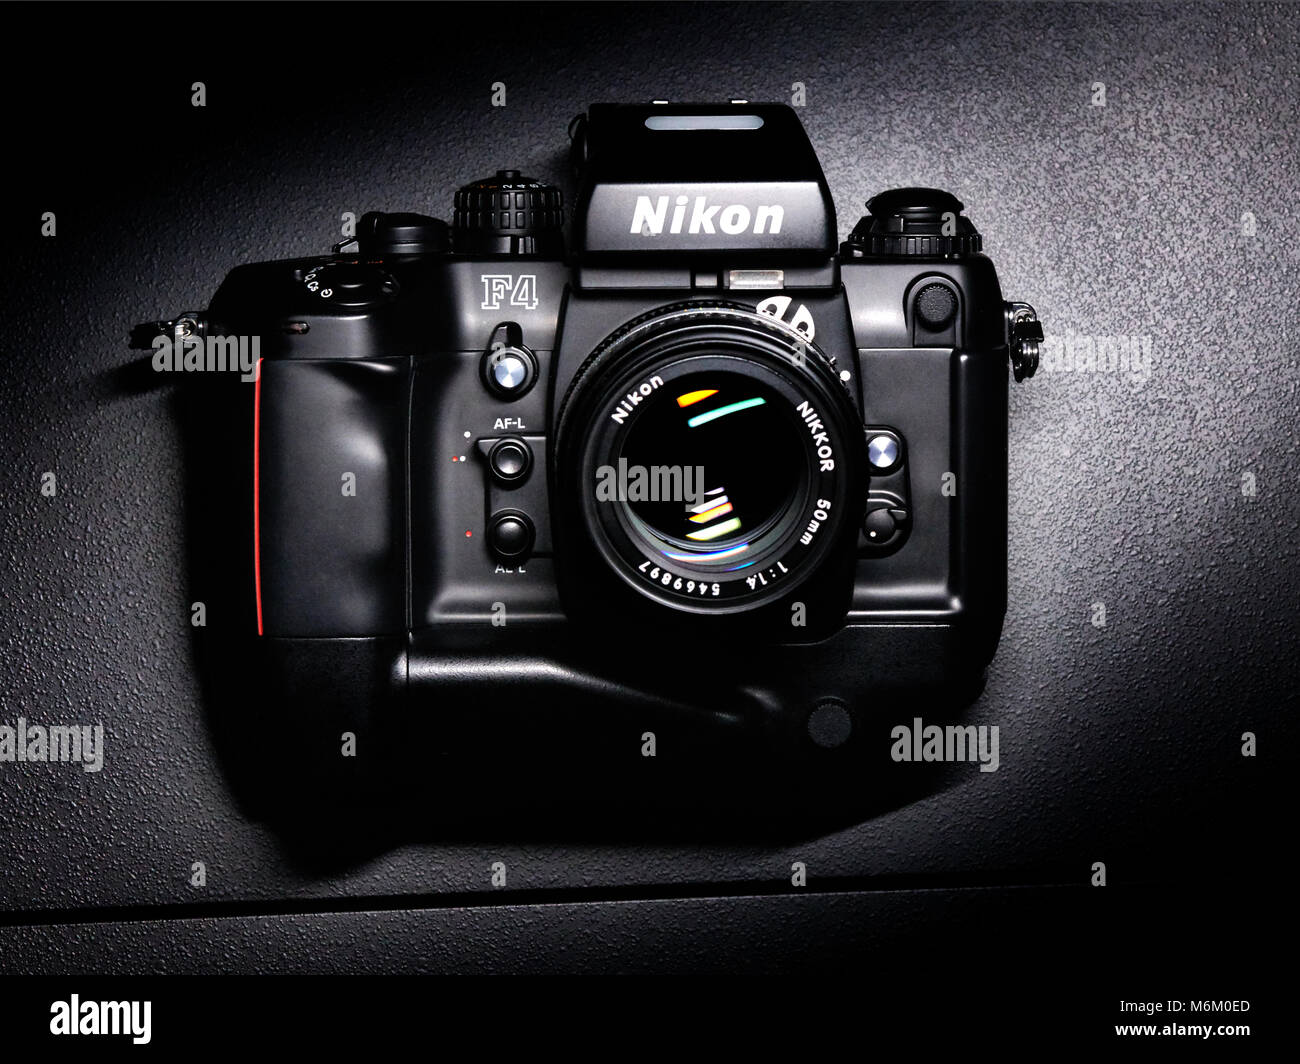 Nikon F4 appareil photo analogique avec batterie grip Banque D'Images